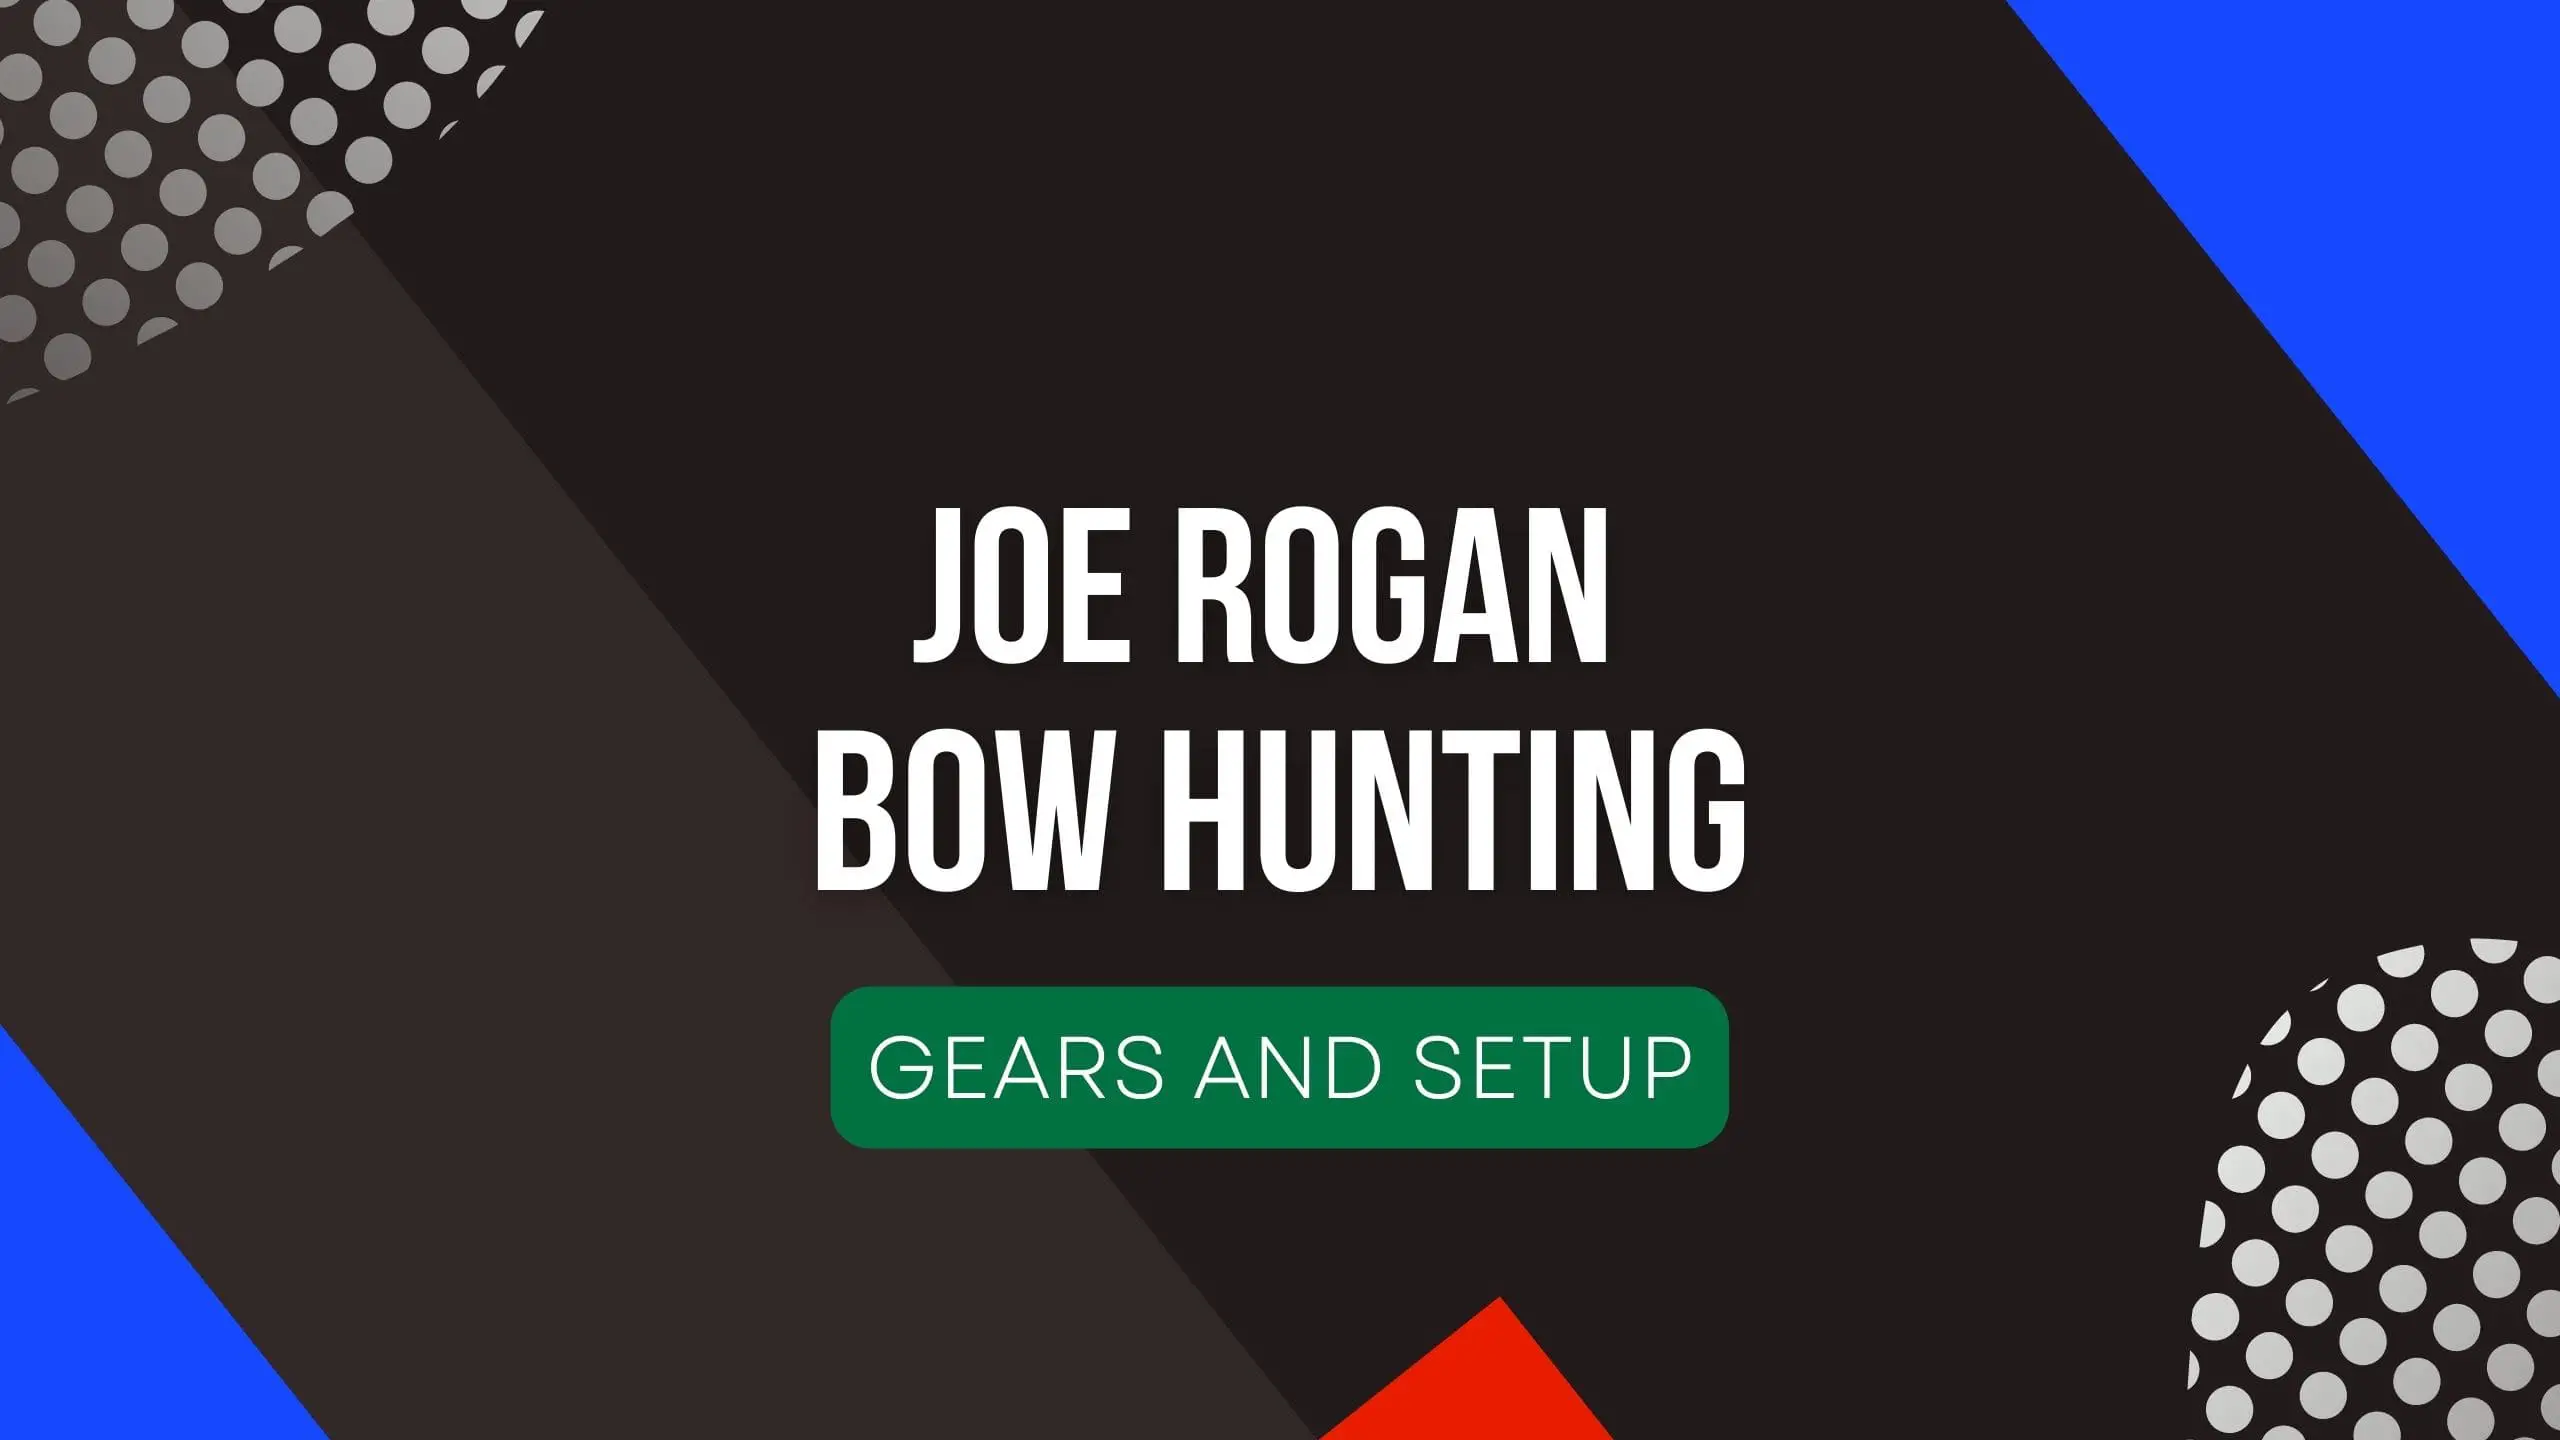 Joe Rogan Bow Hunting